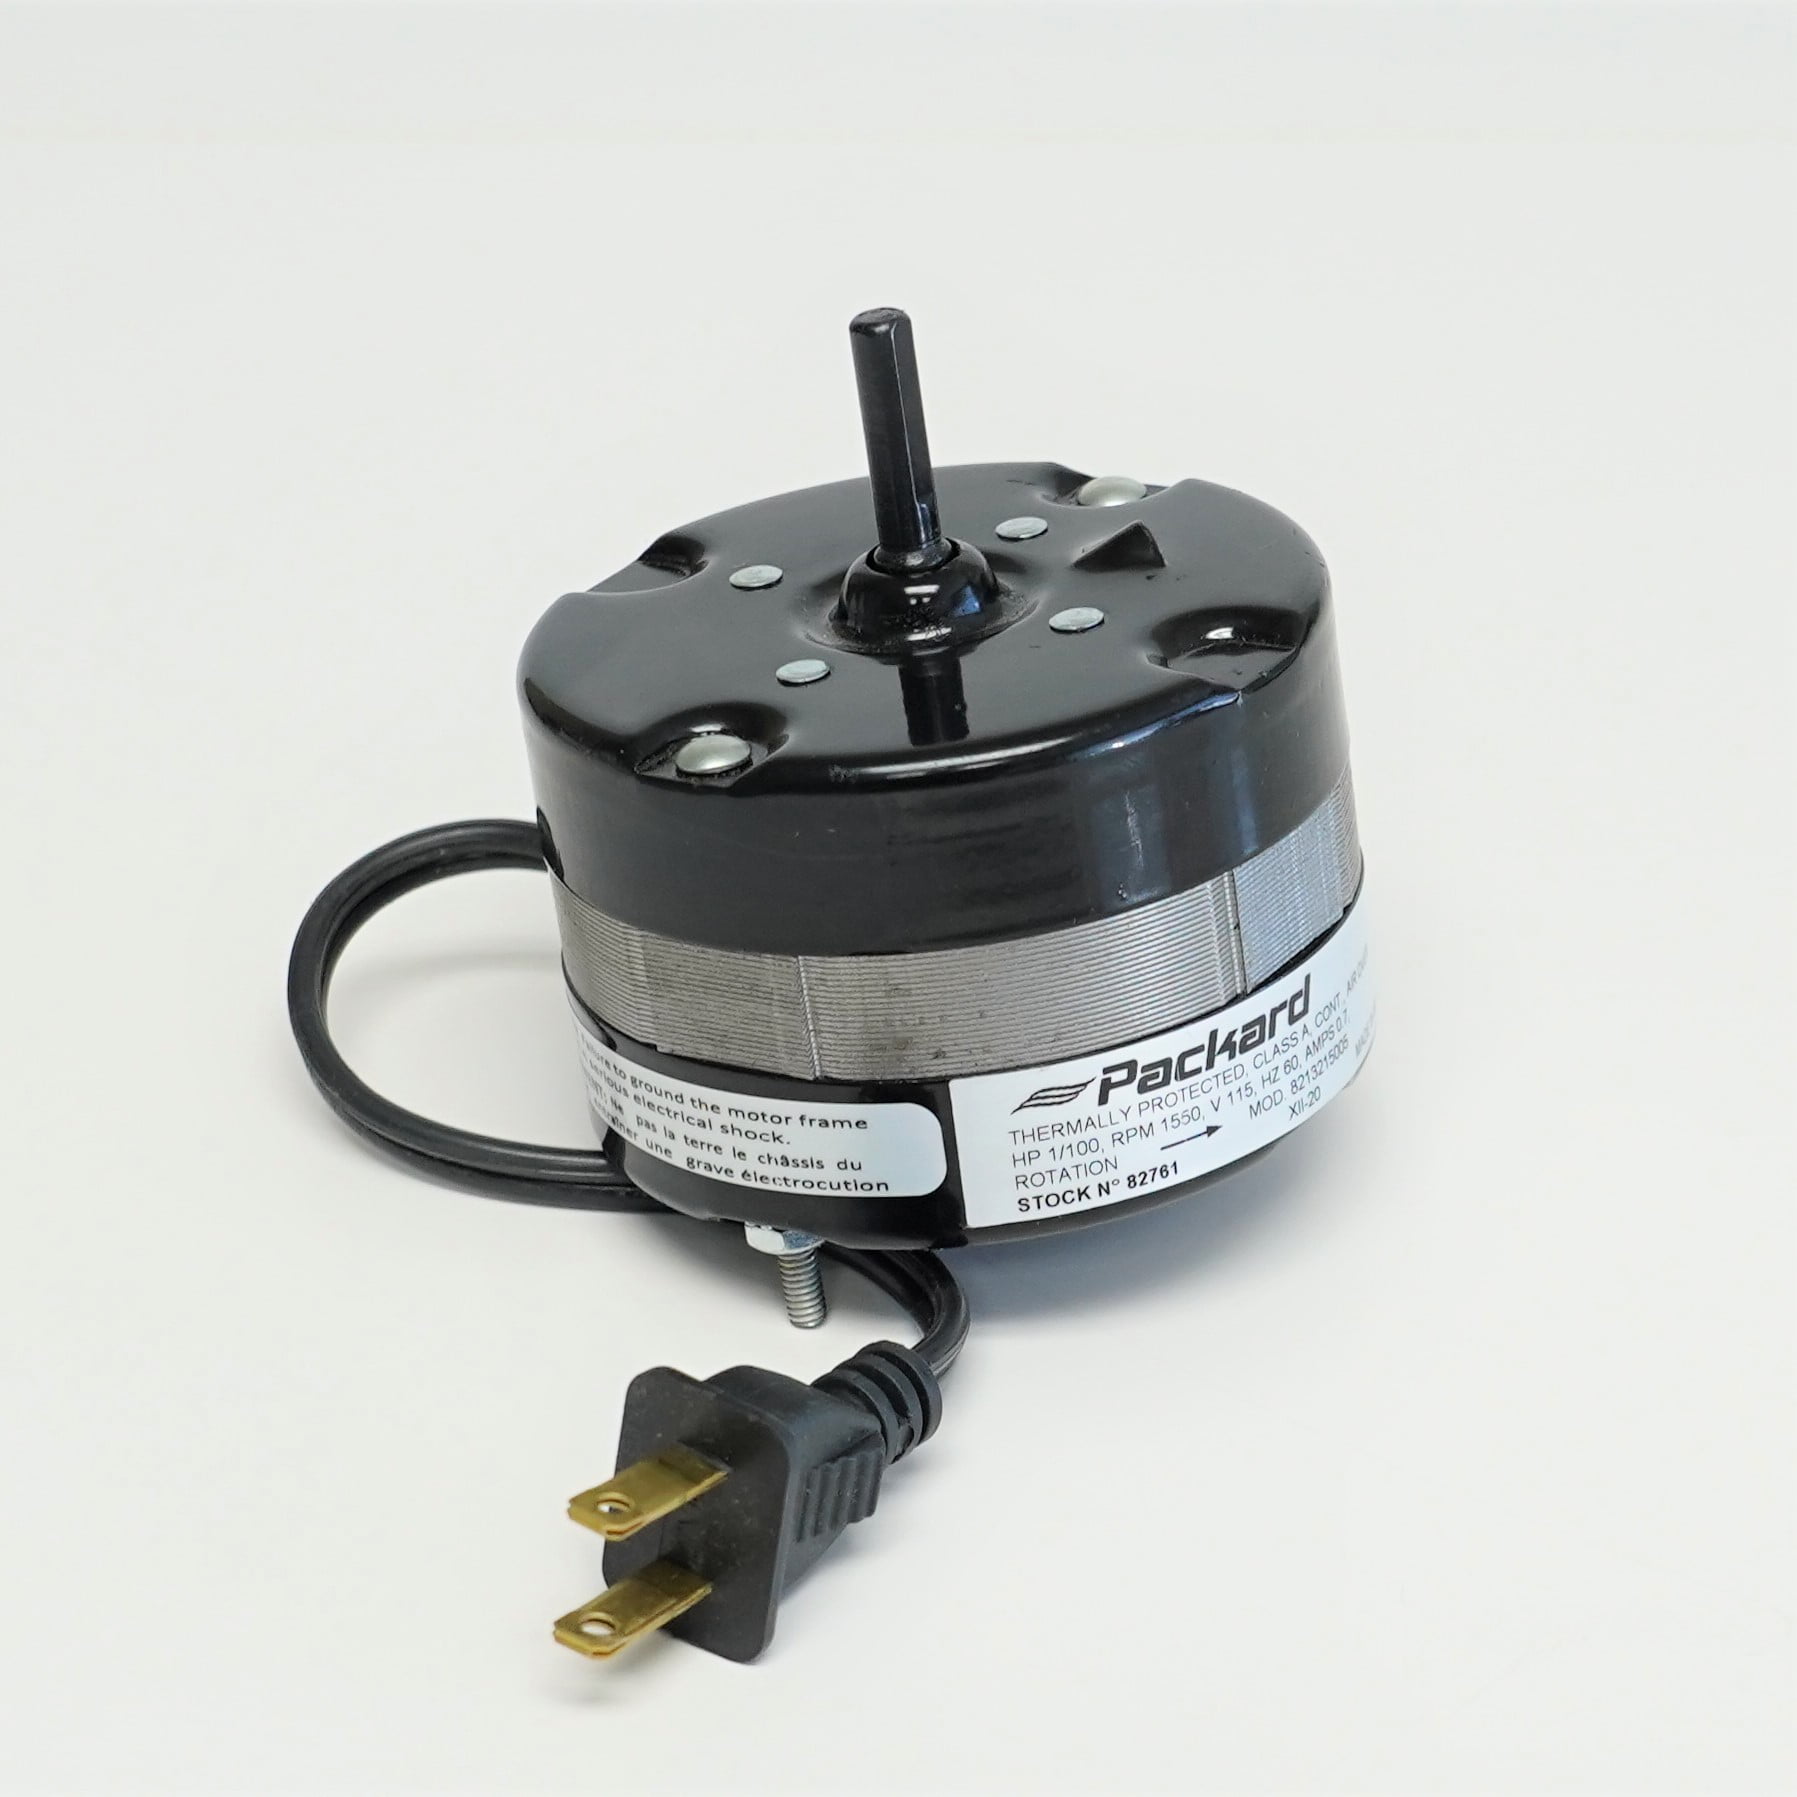 3.3 Inch Diameter Fan Motor For Nutone/Broan Bathroom Kitchen Exhaust Blower 